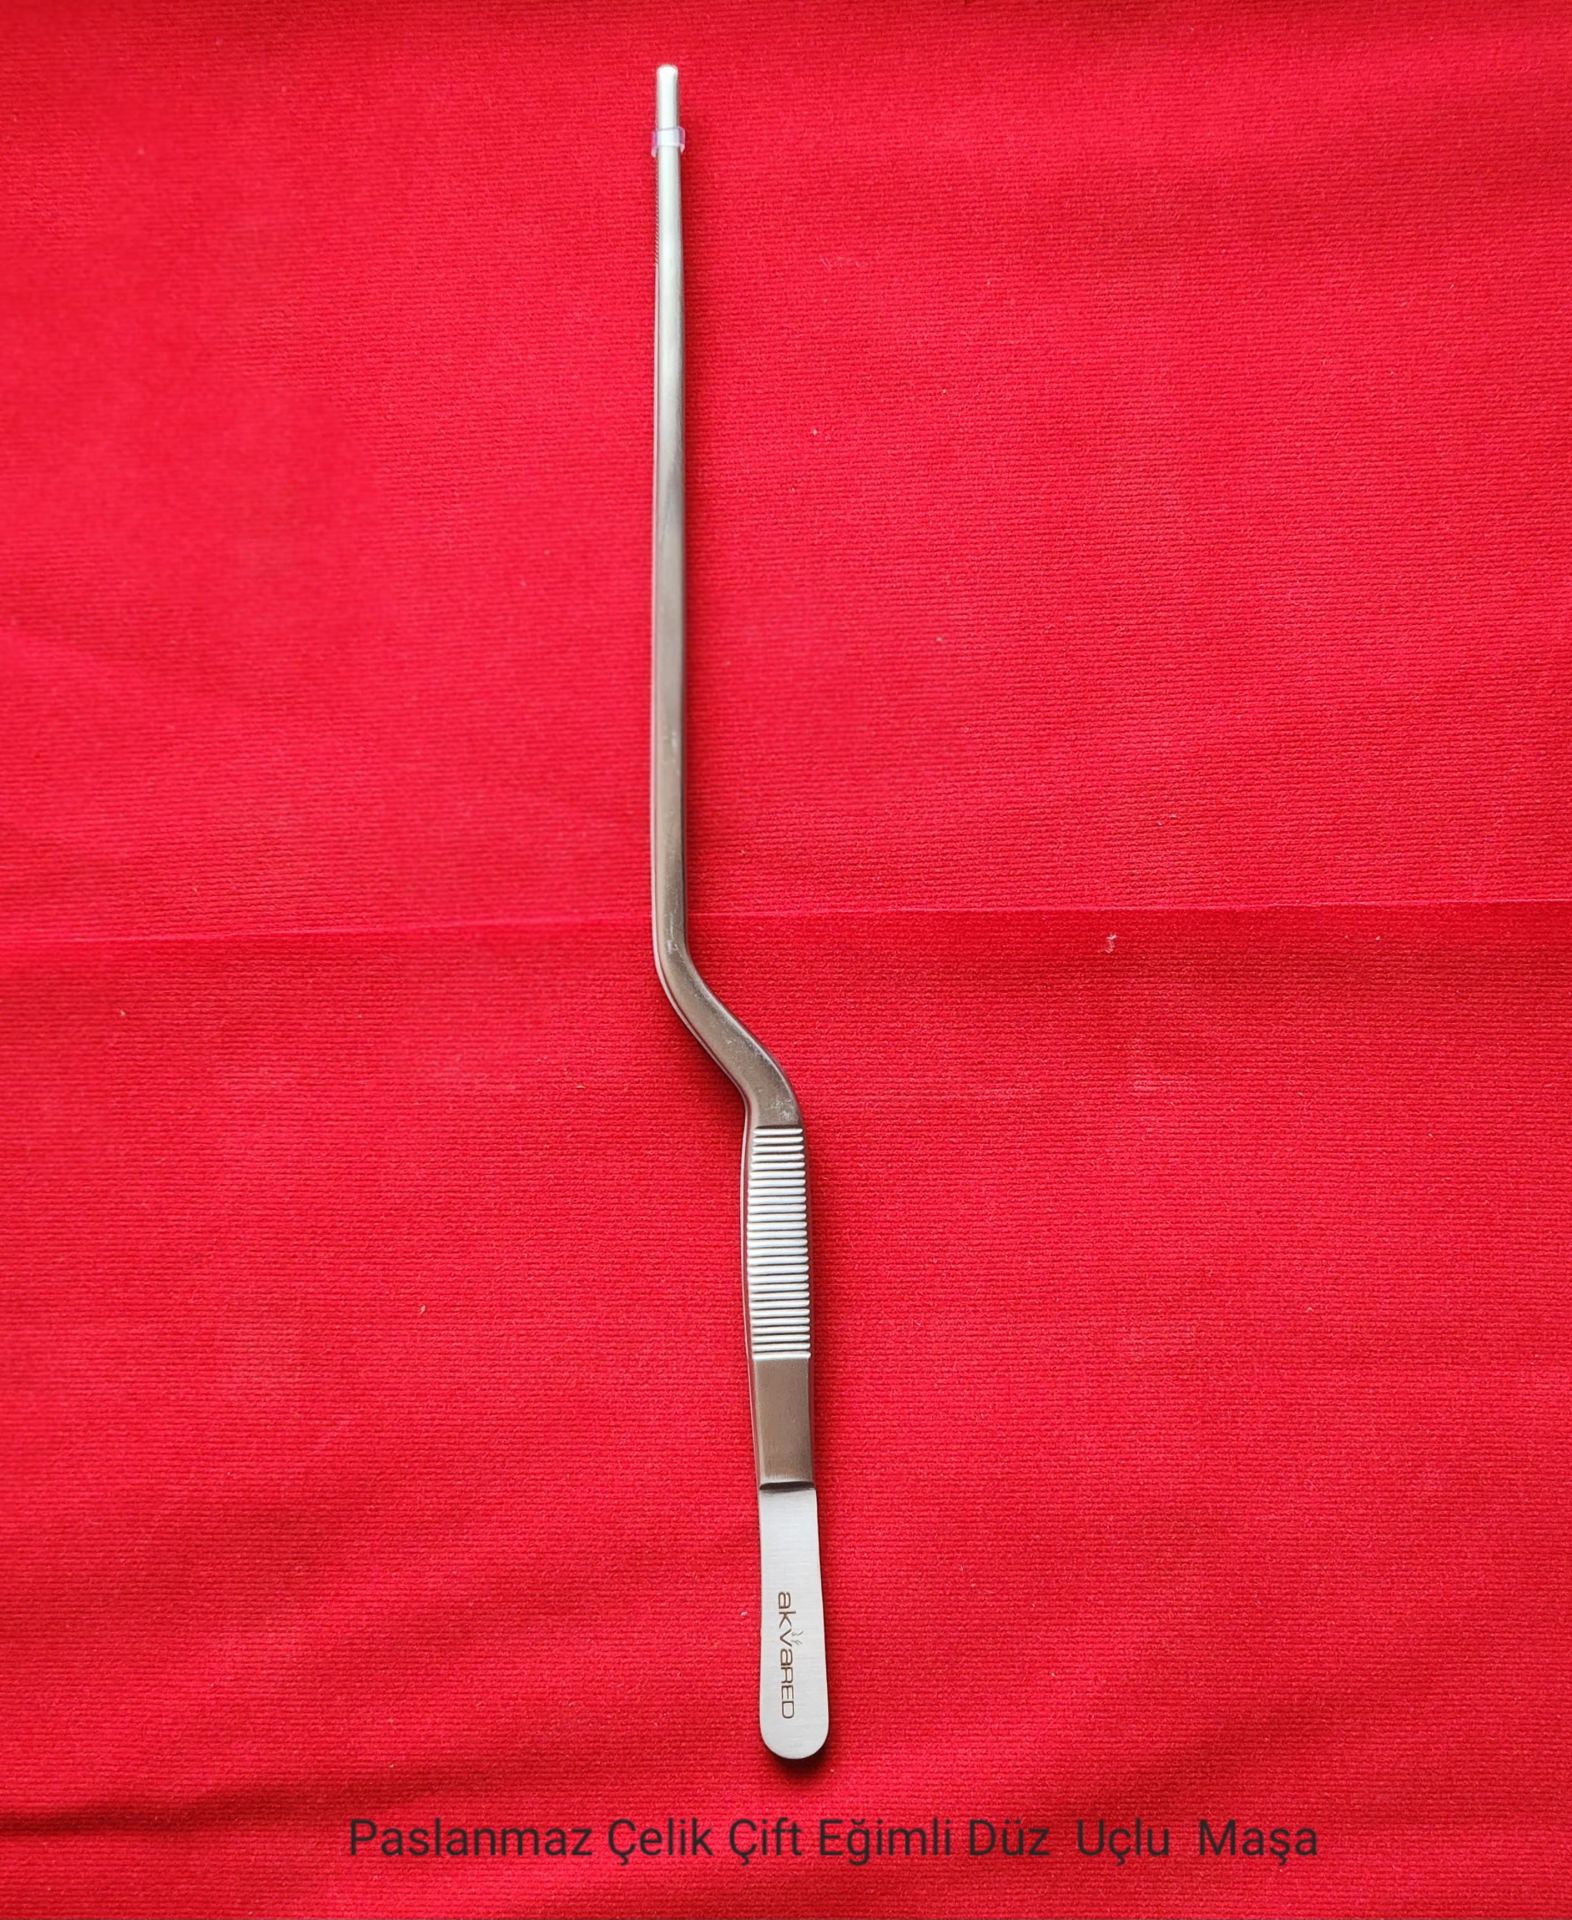 Paslanmaz Çelik Çift Eğimli Düz Uçlu Bitki Maşası (Cımbız) - 25 cm